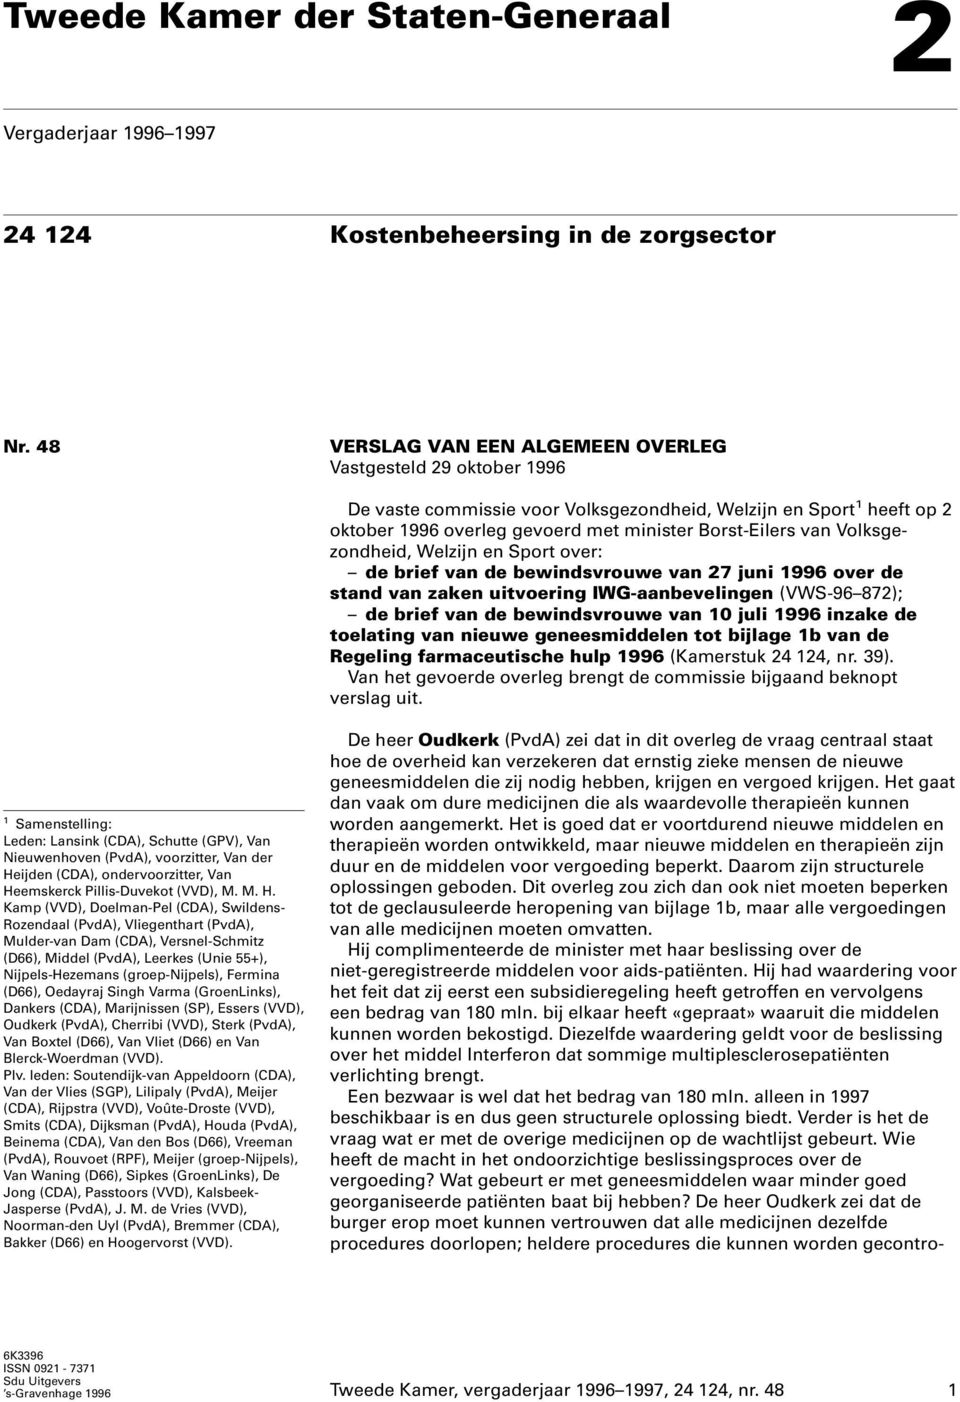 Volksgezondheid, Welzijn en Sport over: de brief van de bewindsvrouwe van 27 juni 1996 over de stand van zaken uitvoering IWG-aanbevelingen (VWS-96 872); de brief van de bewindsvrouwe van 10 juli